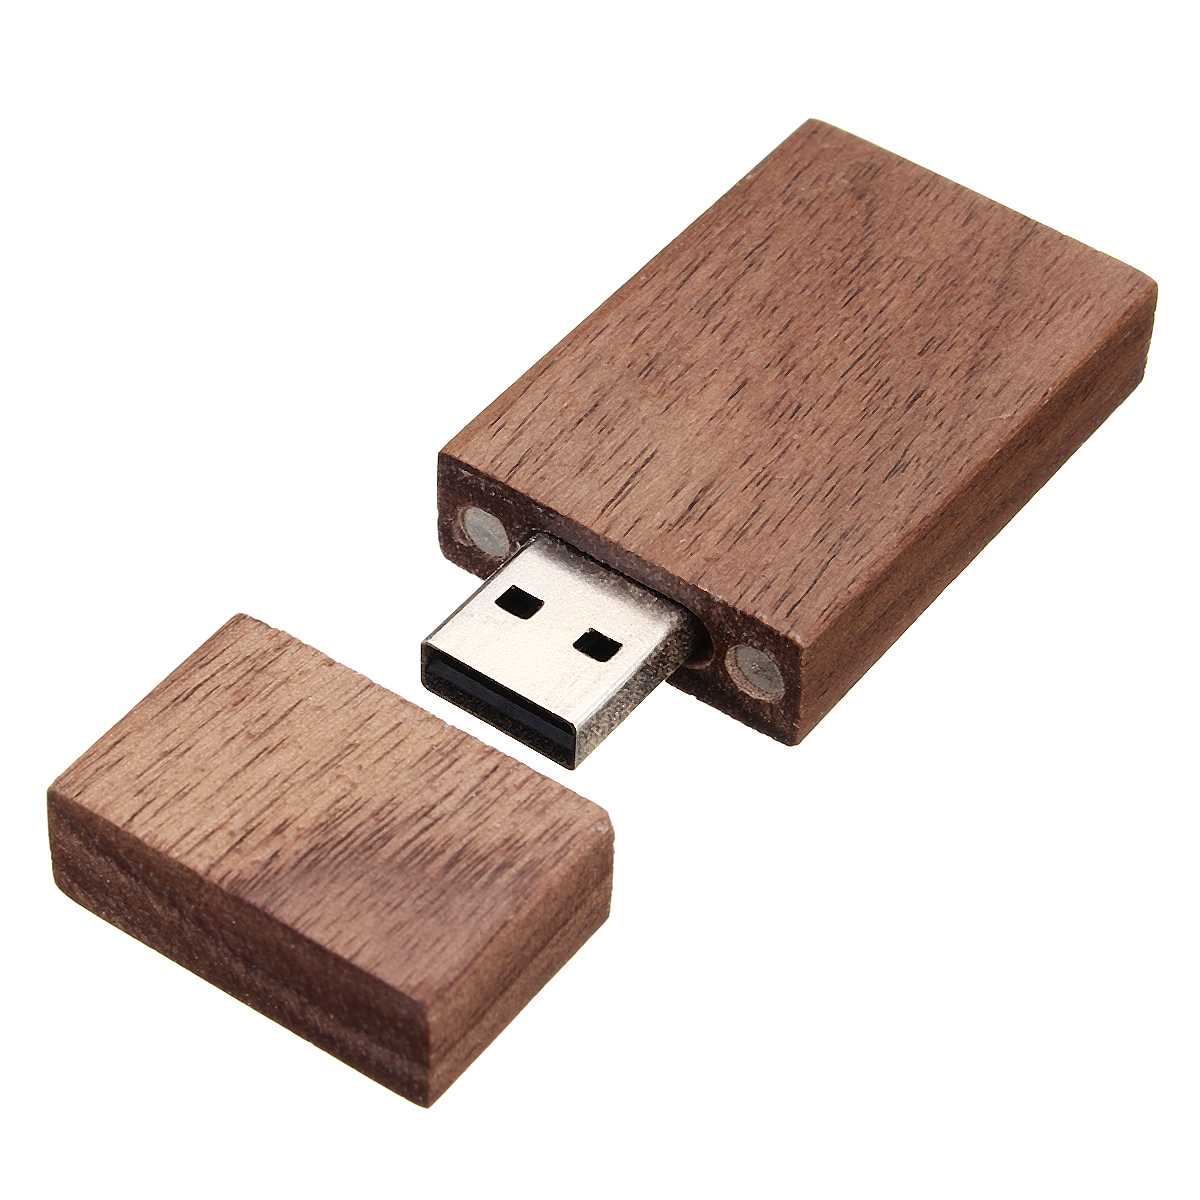 

Орех Вуд 16GB USB 2.0 Flash Диск С Древесиной Коробка Для Ноутбуков Ноутбуков